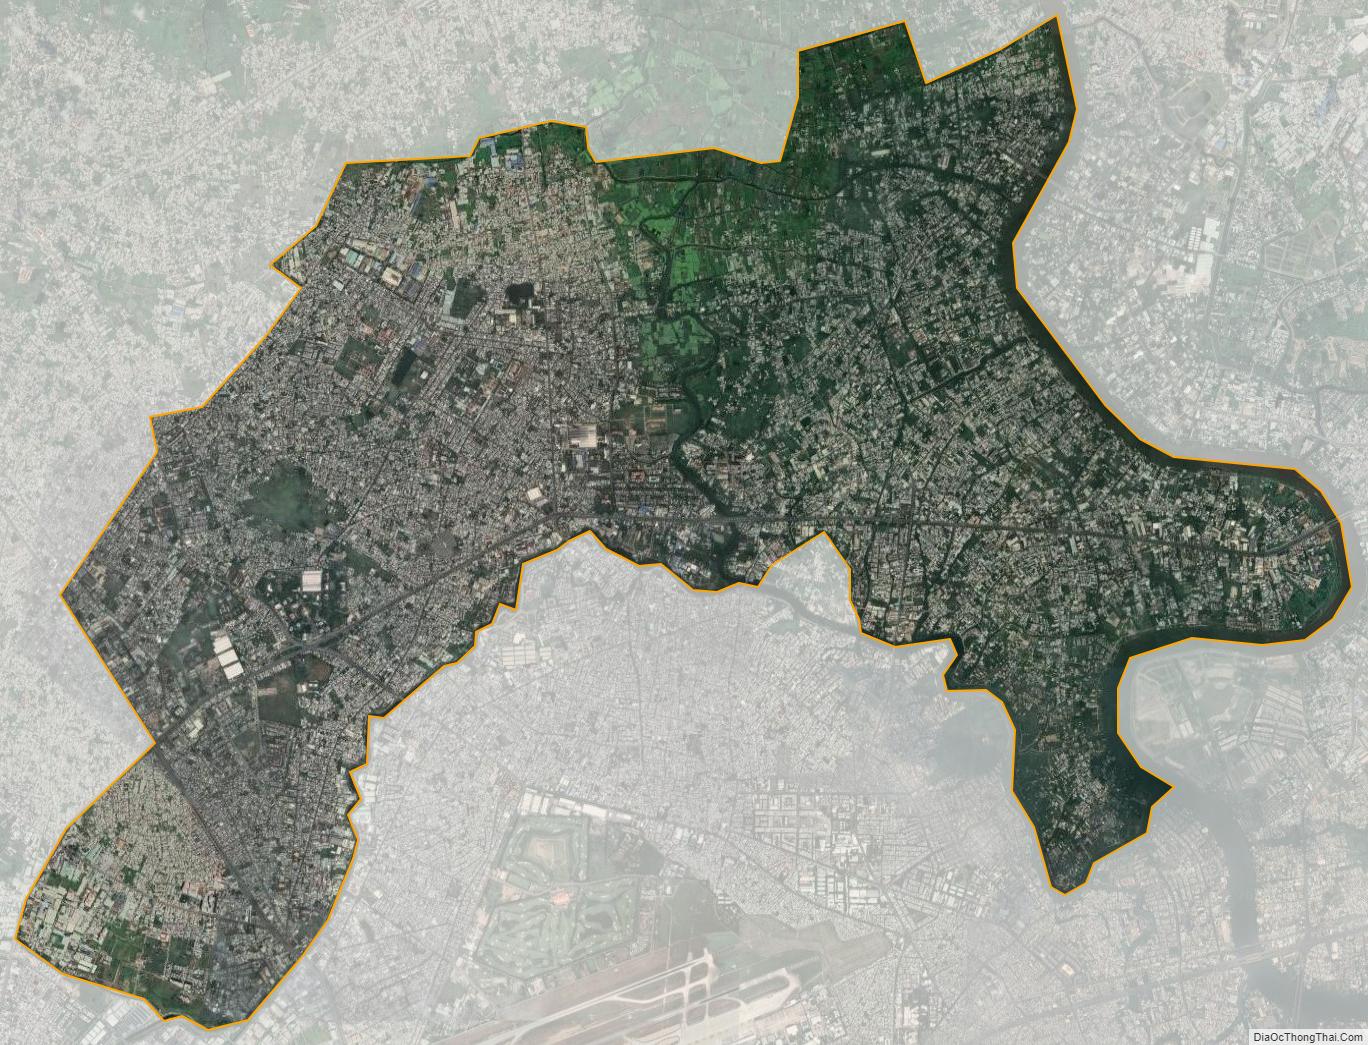 Khám phá bản đồ địa ốc quận 12 Sài Gòn năm 2024 để biết thêm về khu vực tiềm năng và đầy tiềm năng này. Với sự phát triển chóng mặt của quận, các cơ hội đầu tư bất động sản ở đây sẽ được tăng cường, hứa hẹn mang đến cho bạn những lợi ích tuyệt vời.